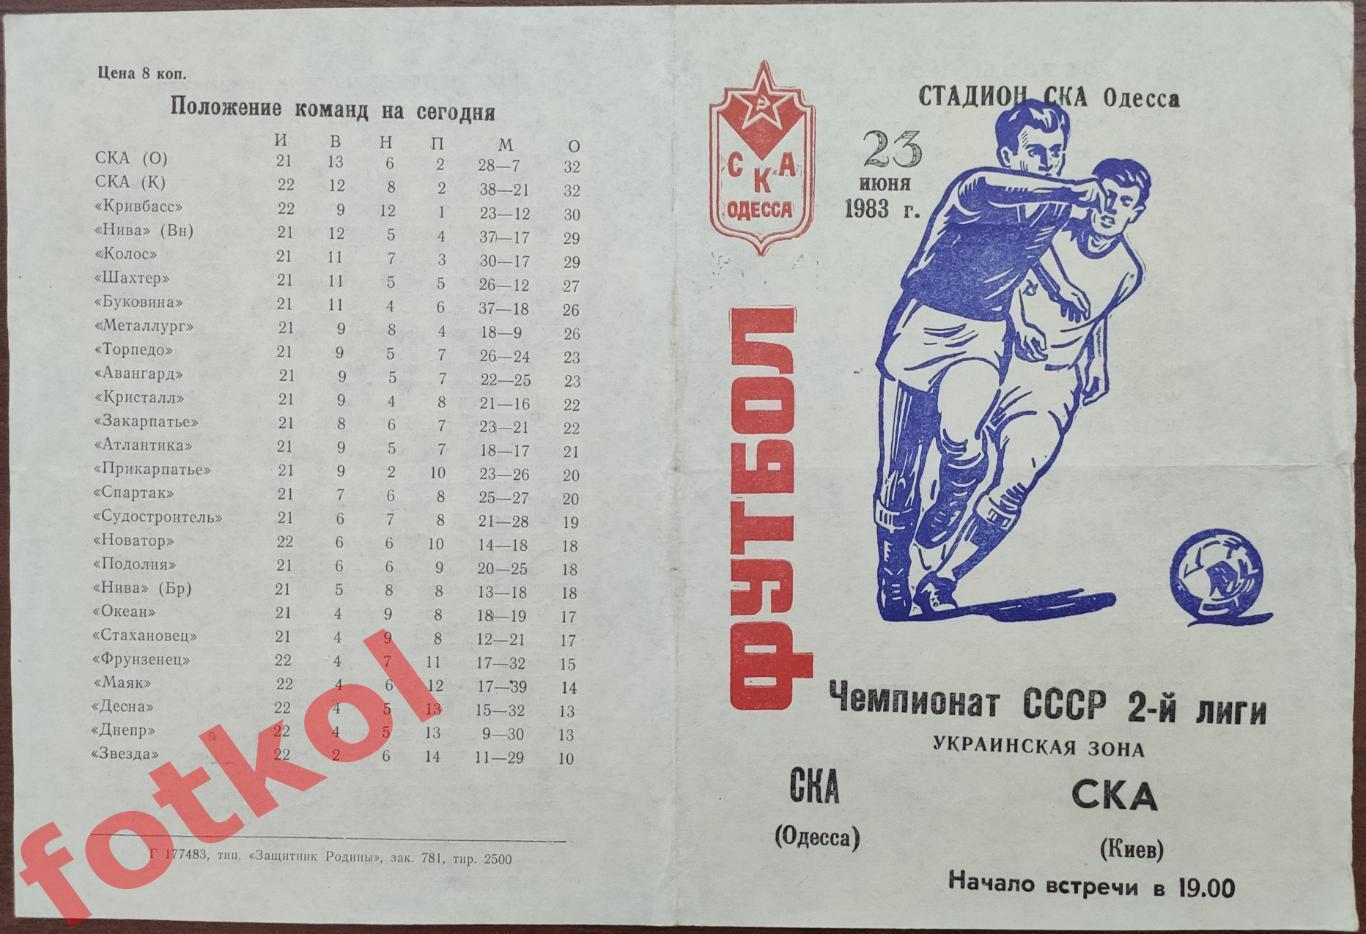 СКА Одесса - СКА Киев 23.06.1983